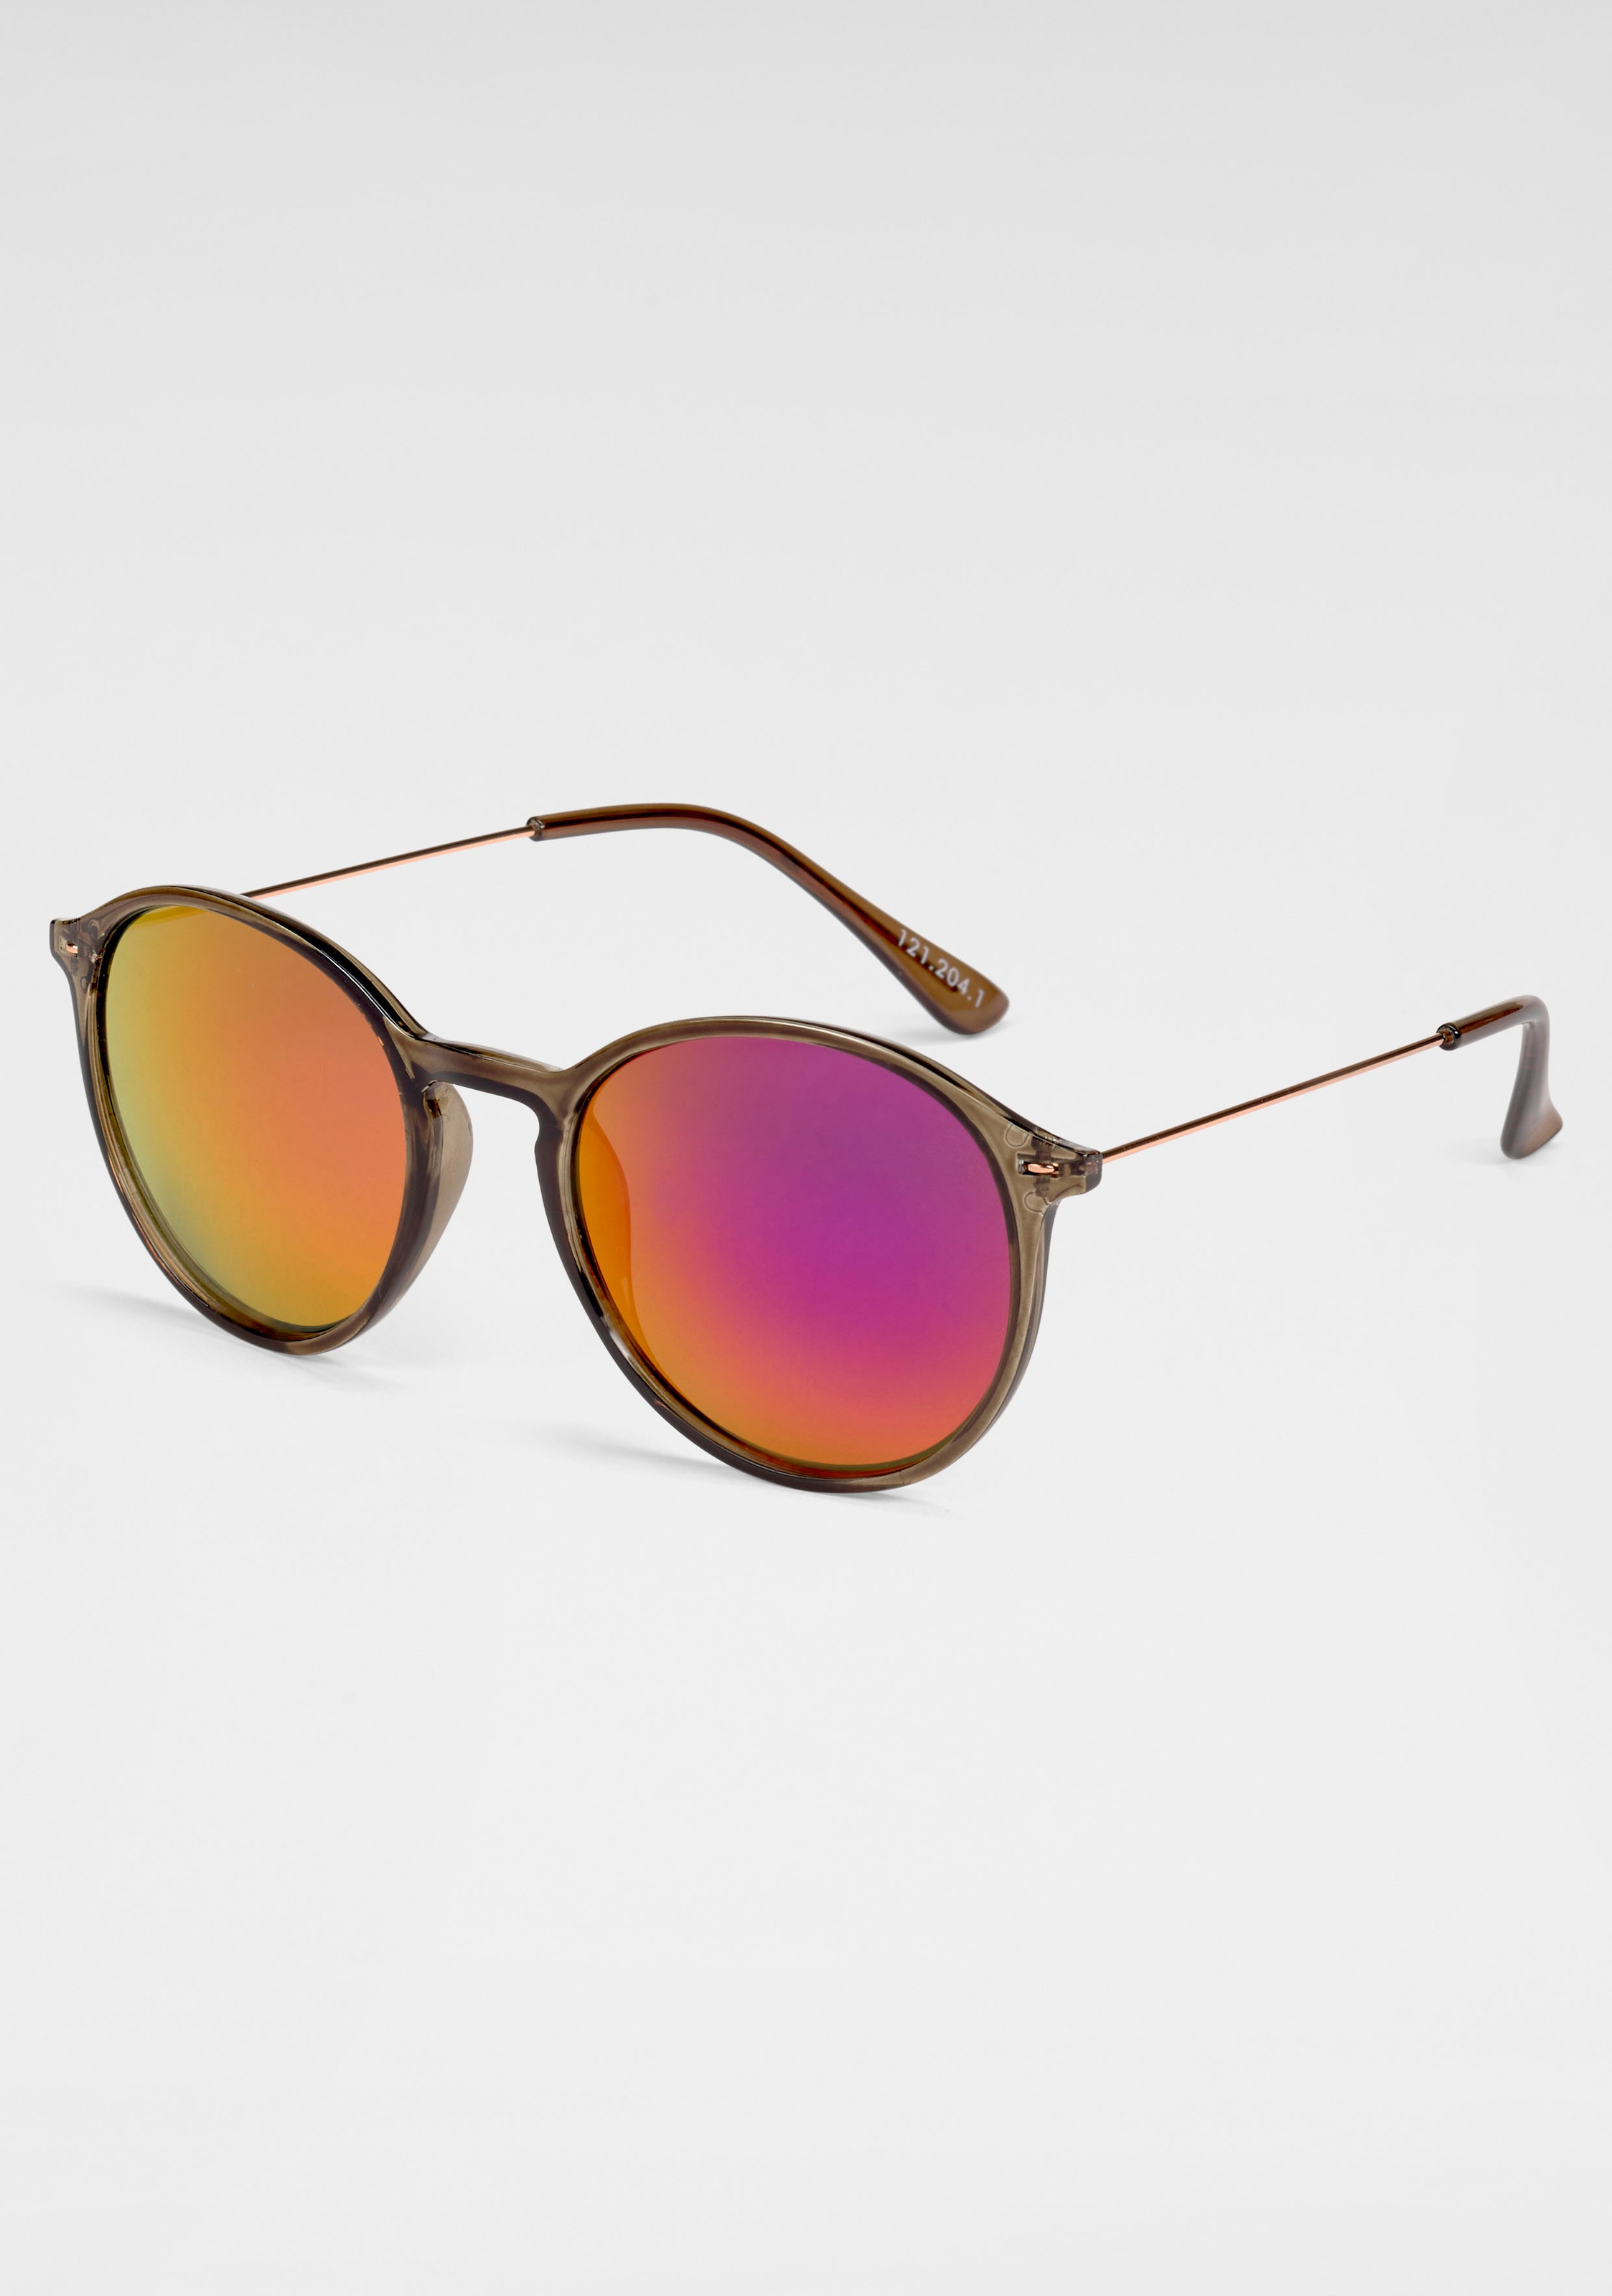 Sonnenbrille, Filigrane Damen-Sonnenbrille mit Metallbügeln